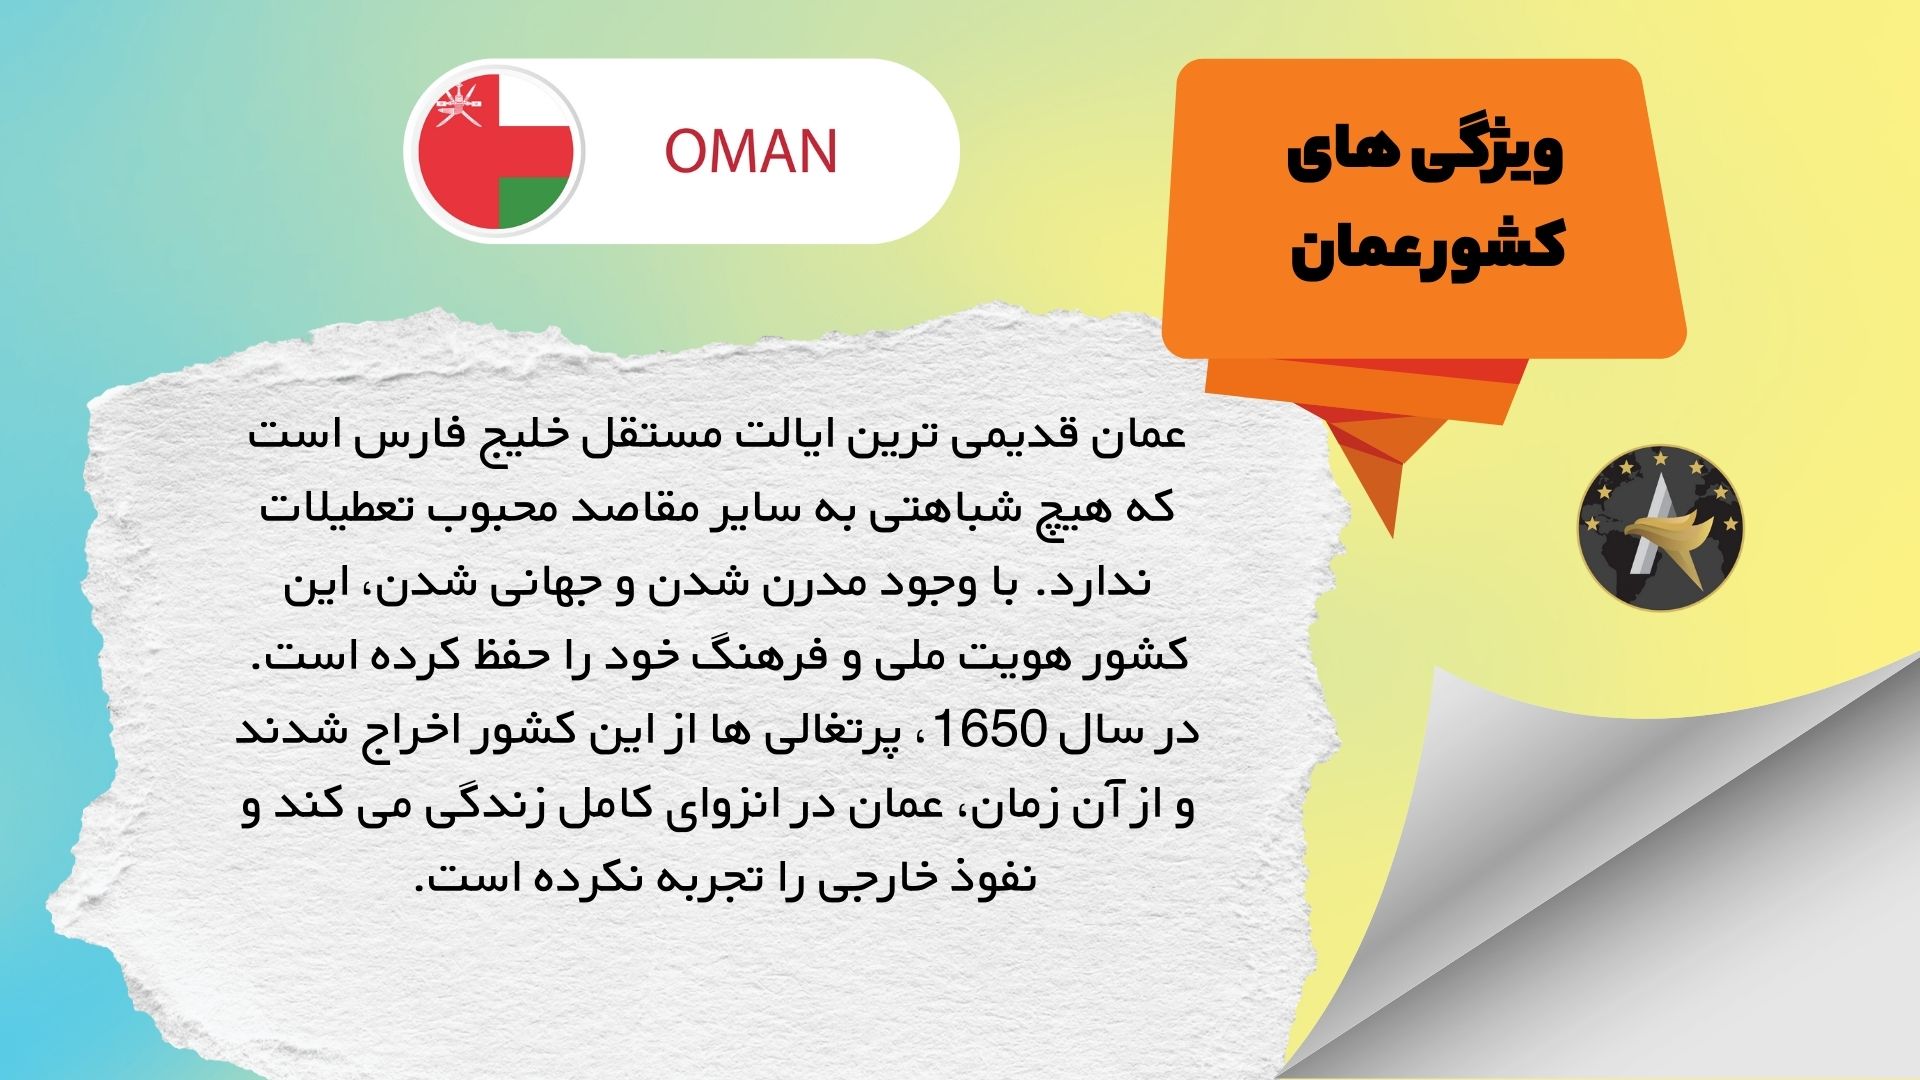 ویژگی های کشور عمان